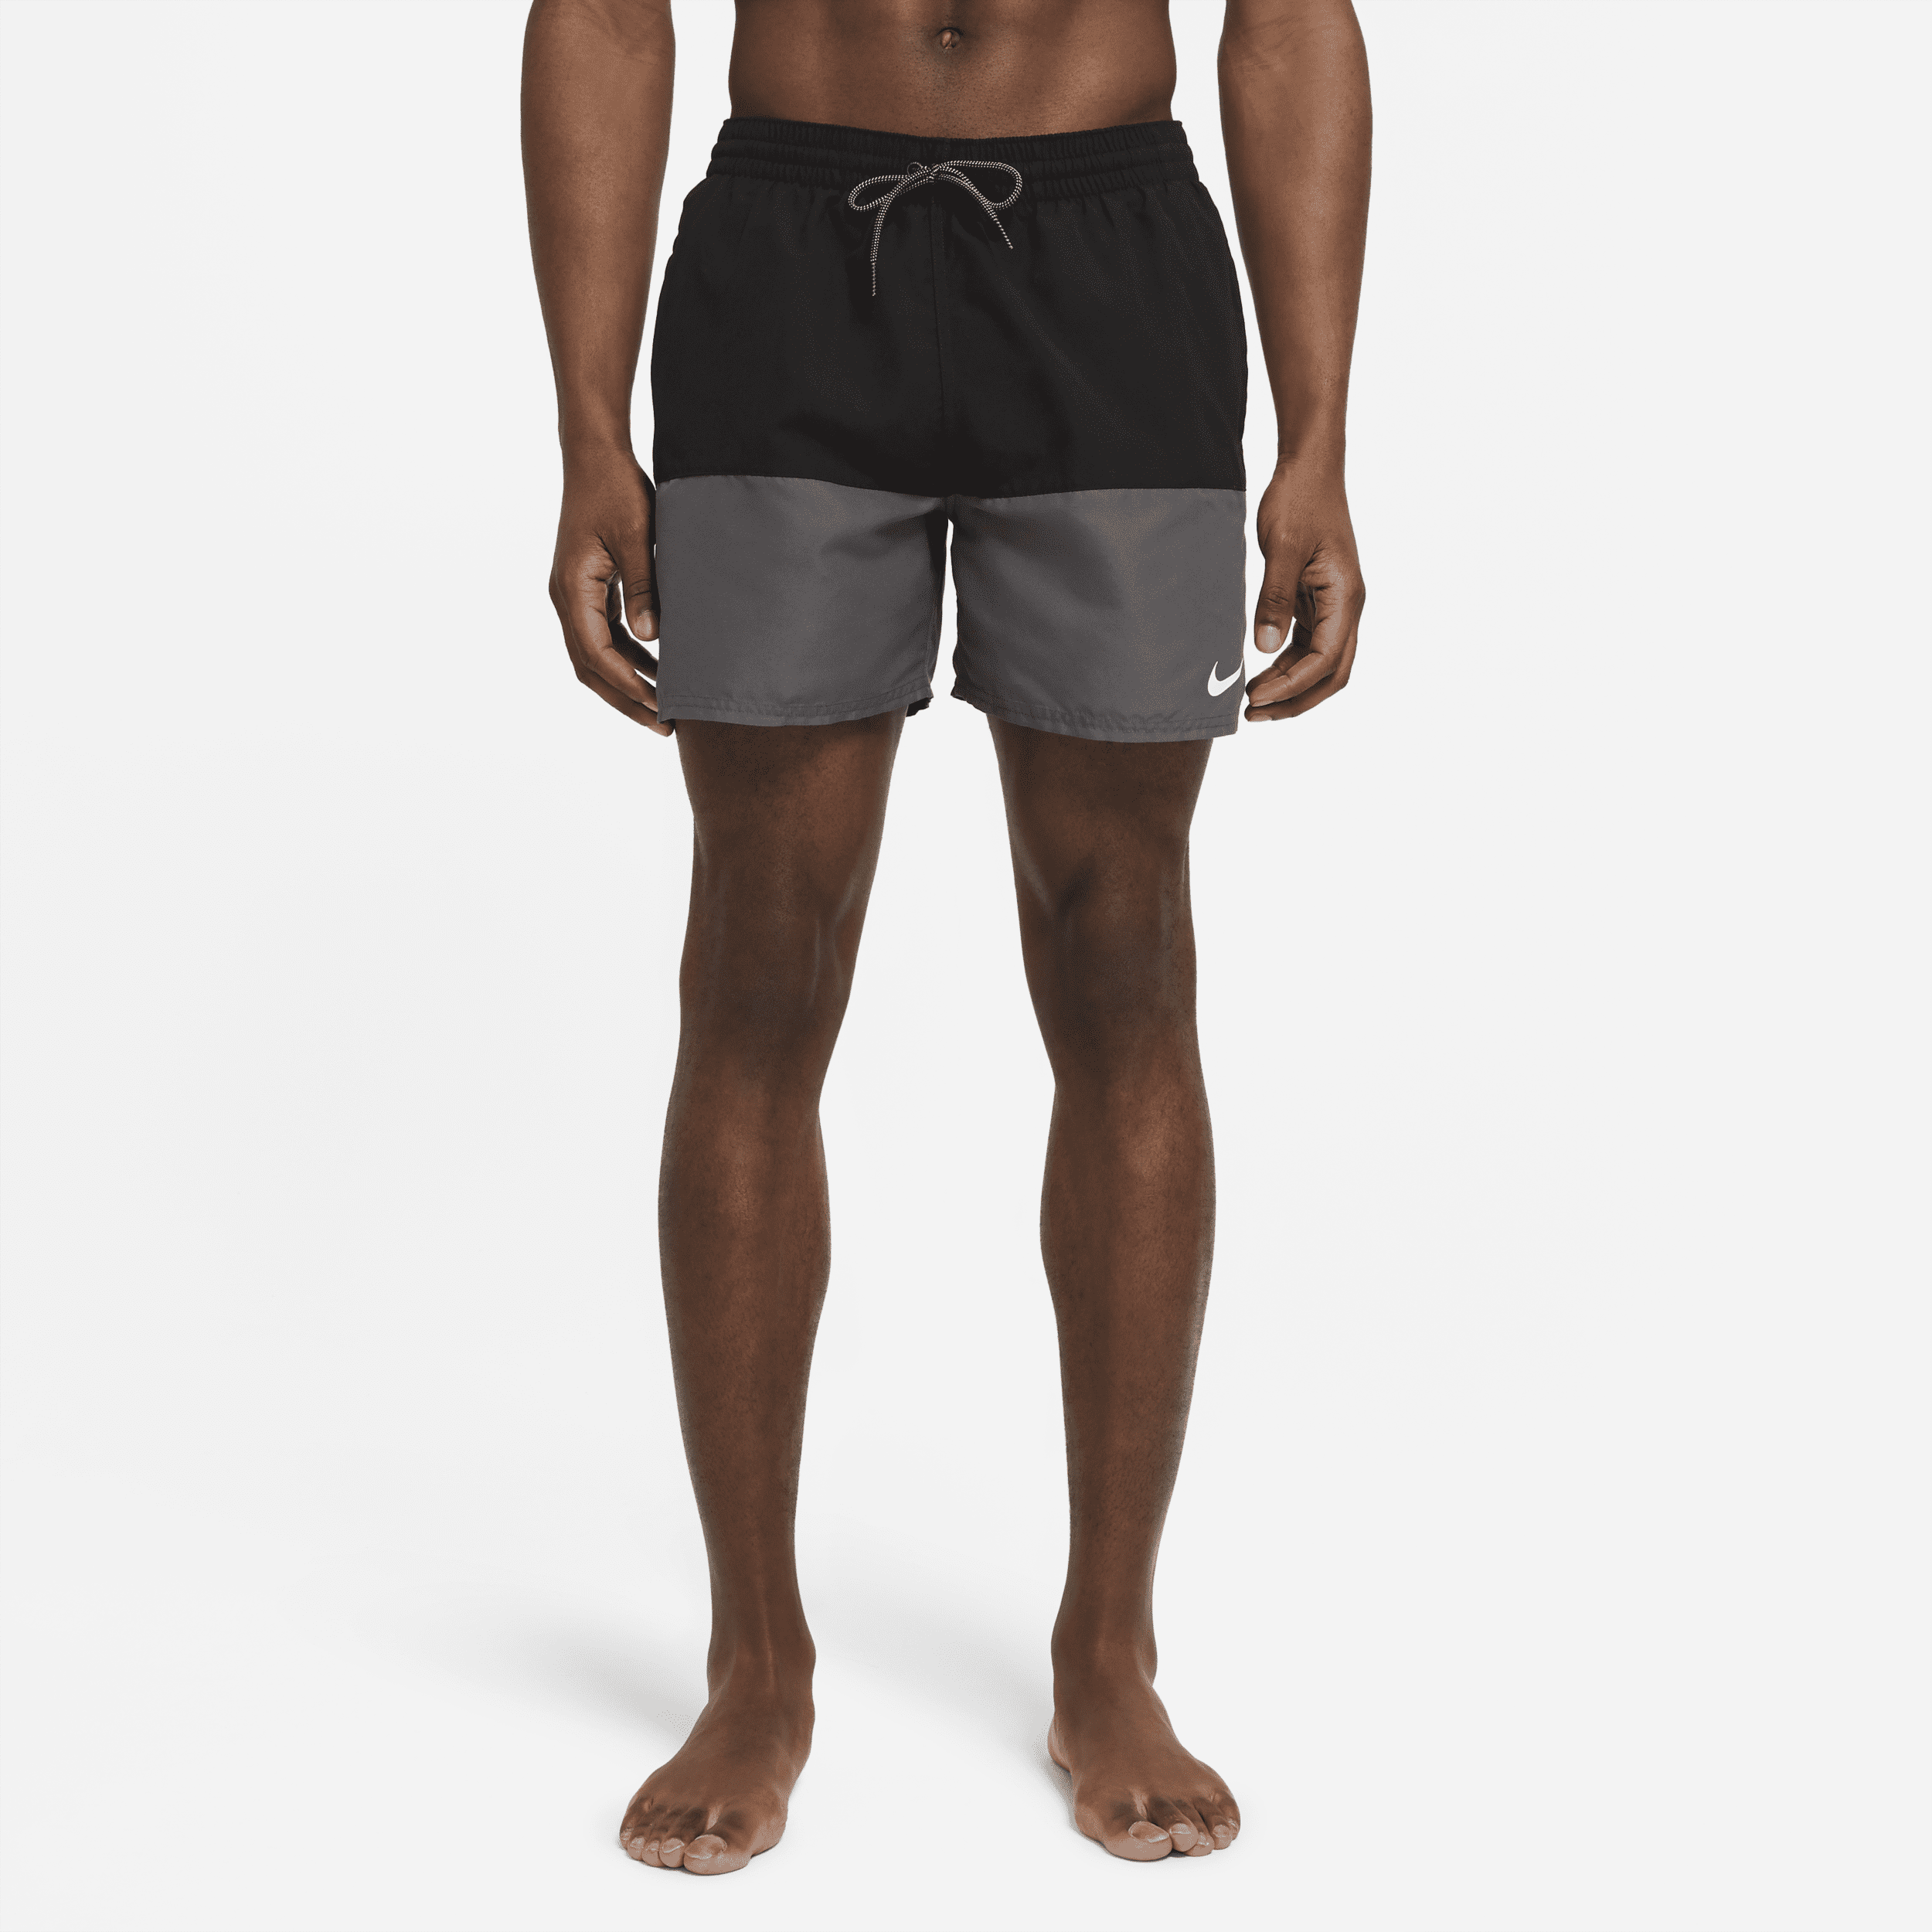 Nike Split-badebukser (13 cm) til mænd - sort